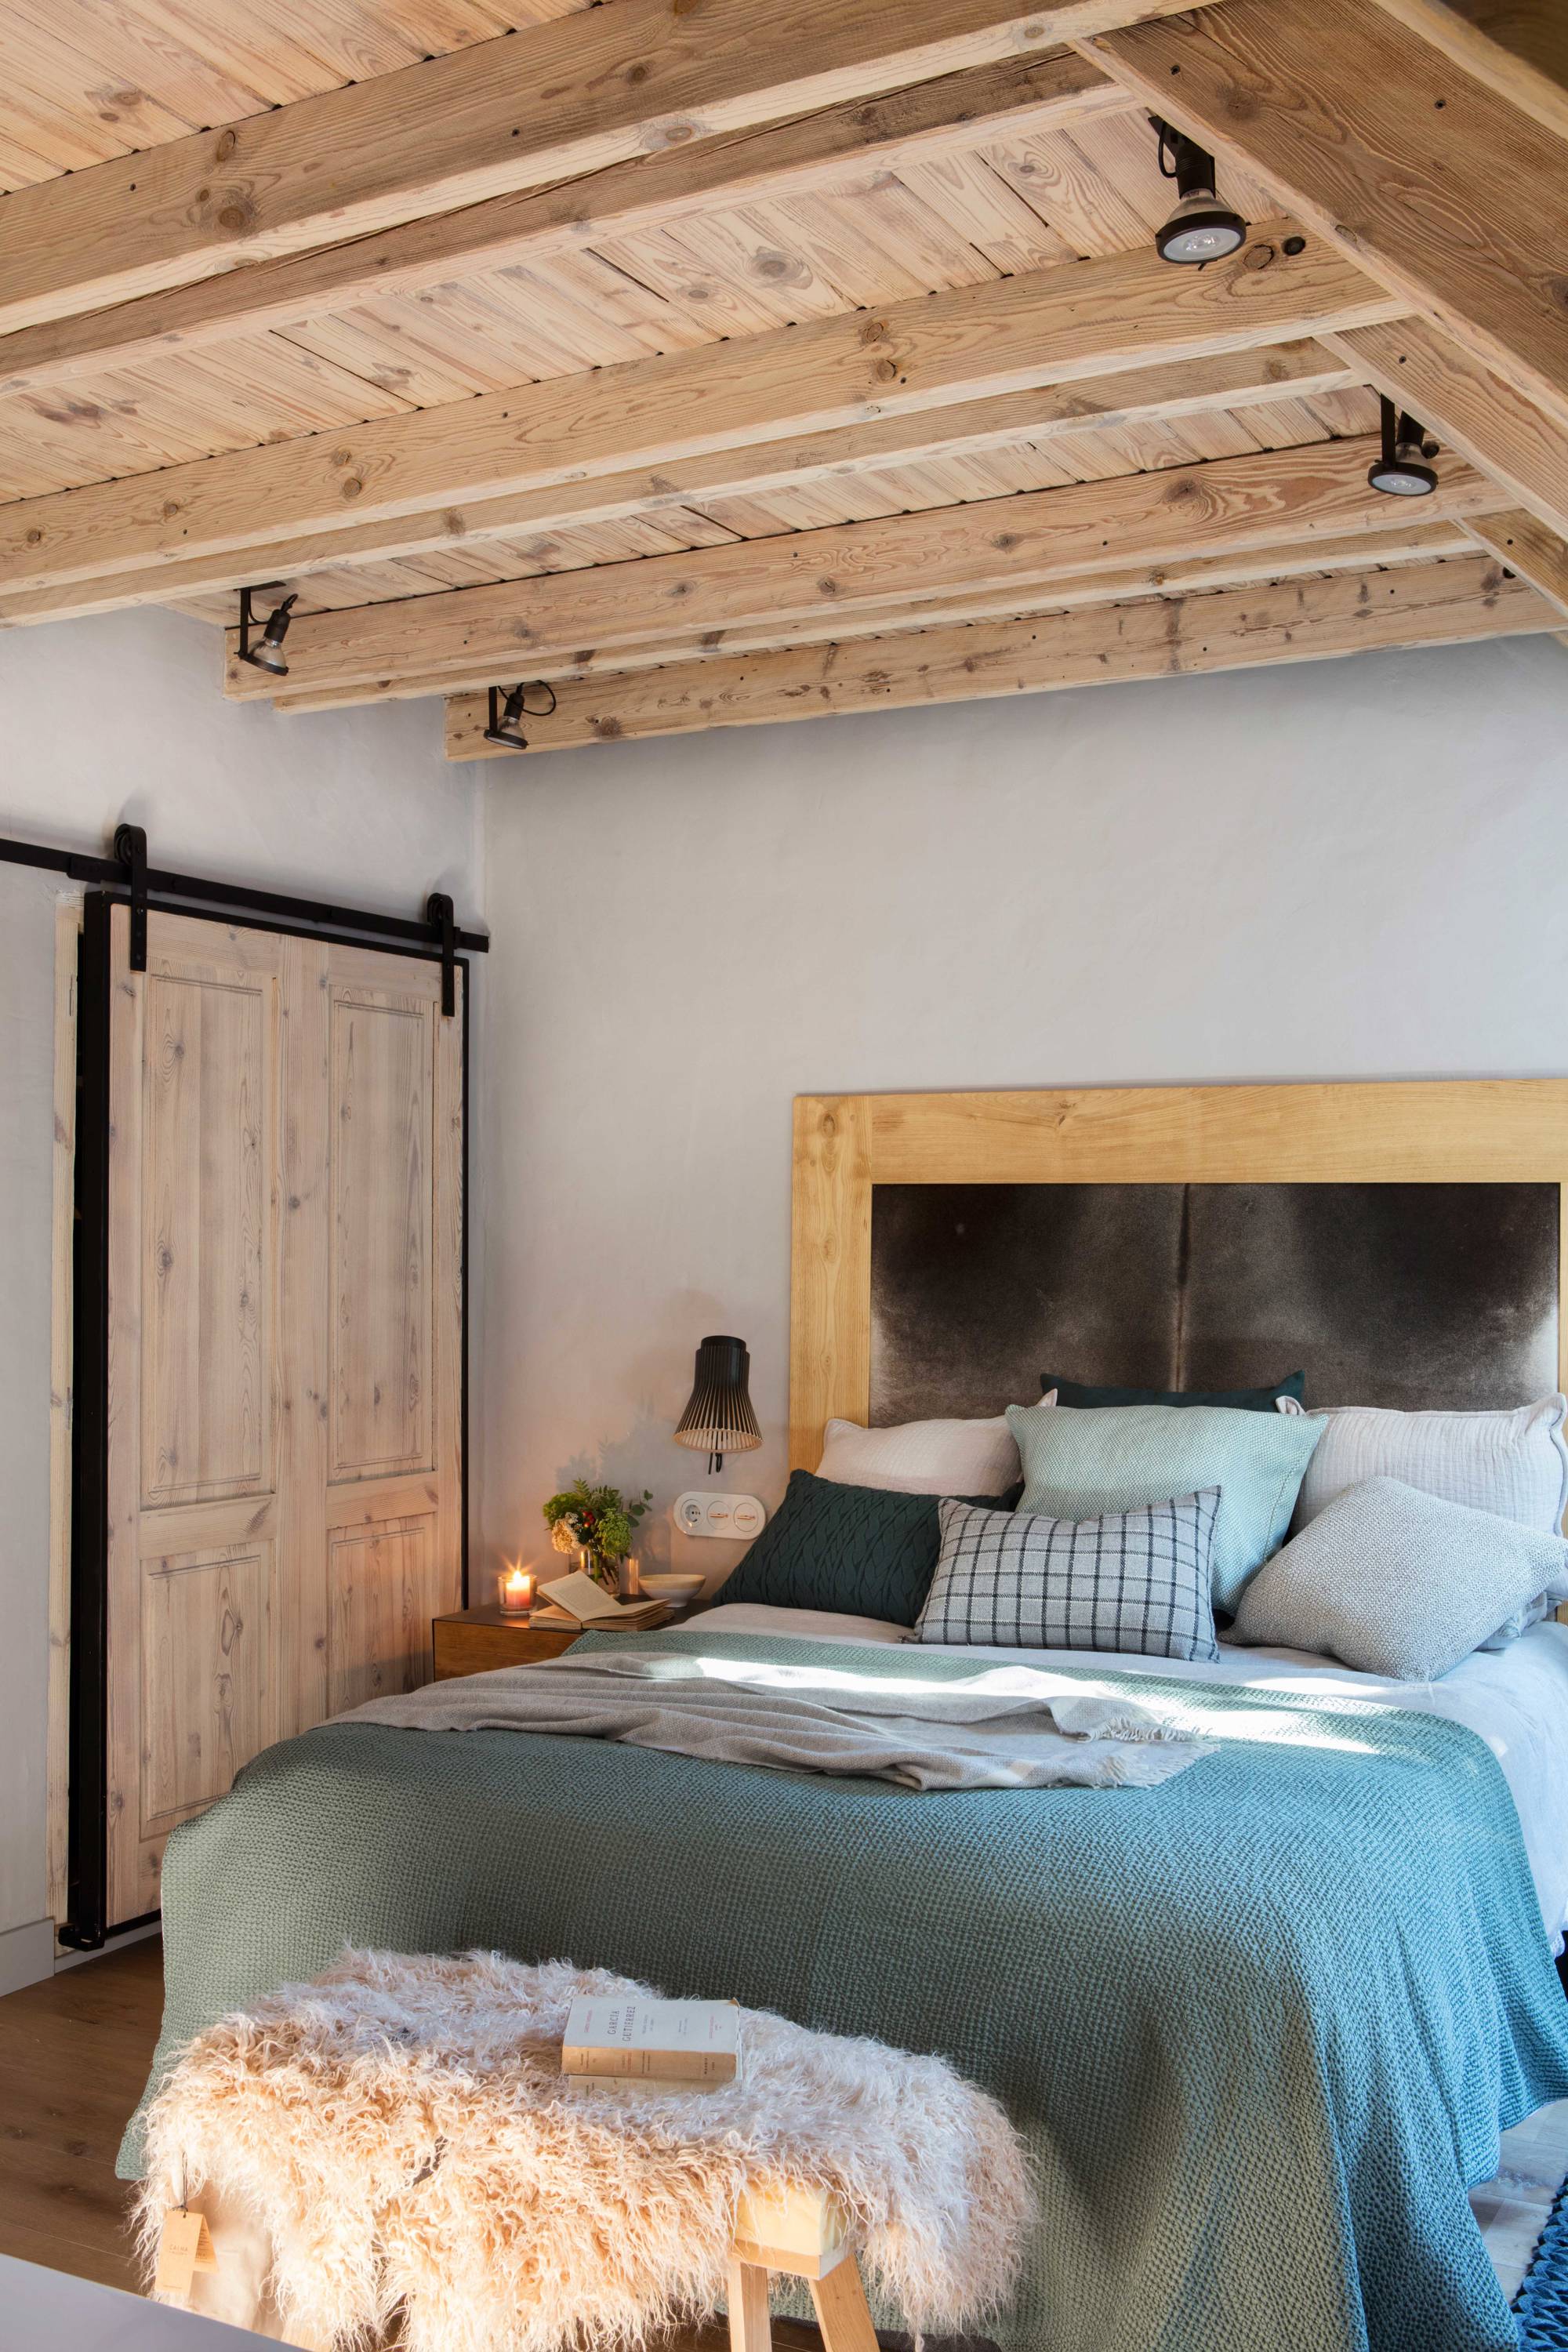 Dormitorio rústico con vigas de maderaa y puerta corredera tipo granero